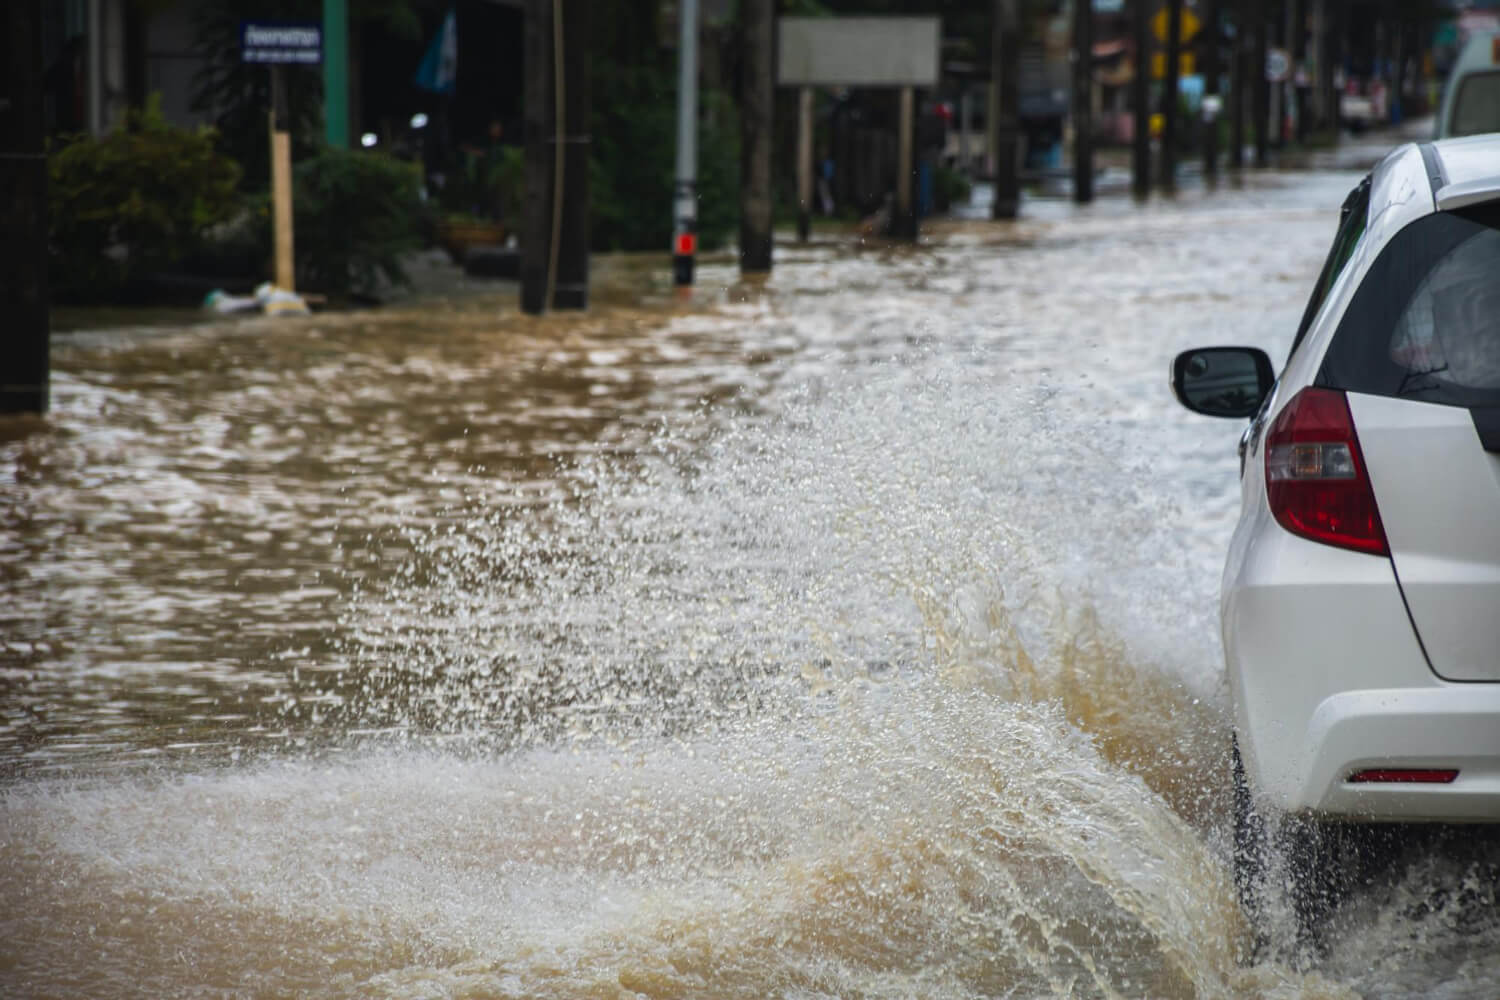 Zalany samochód? Jak ubezpieczyć się od skutków zalania pojazdu?